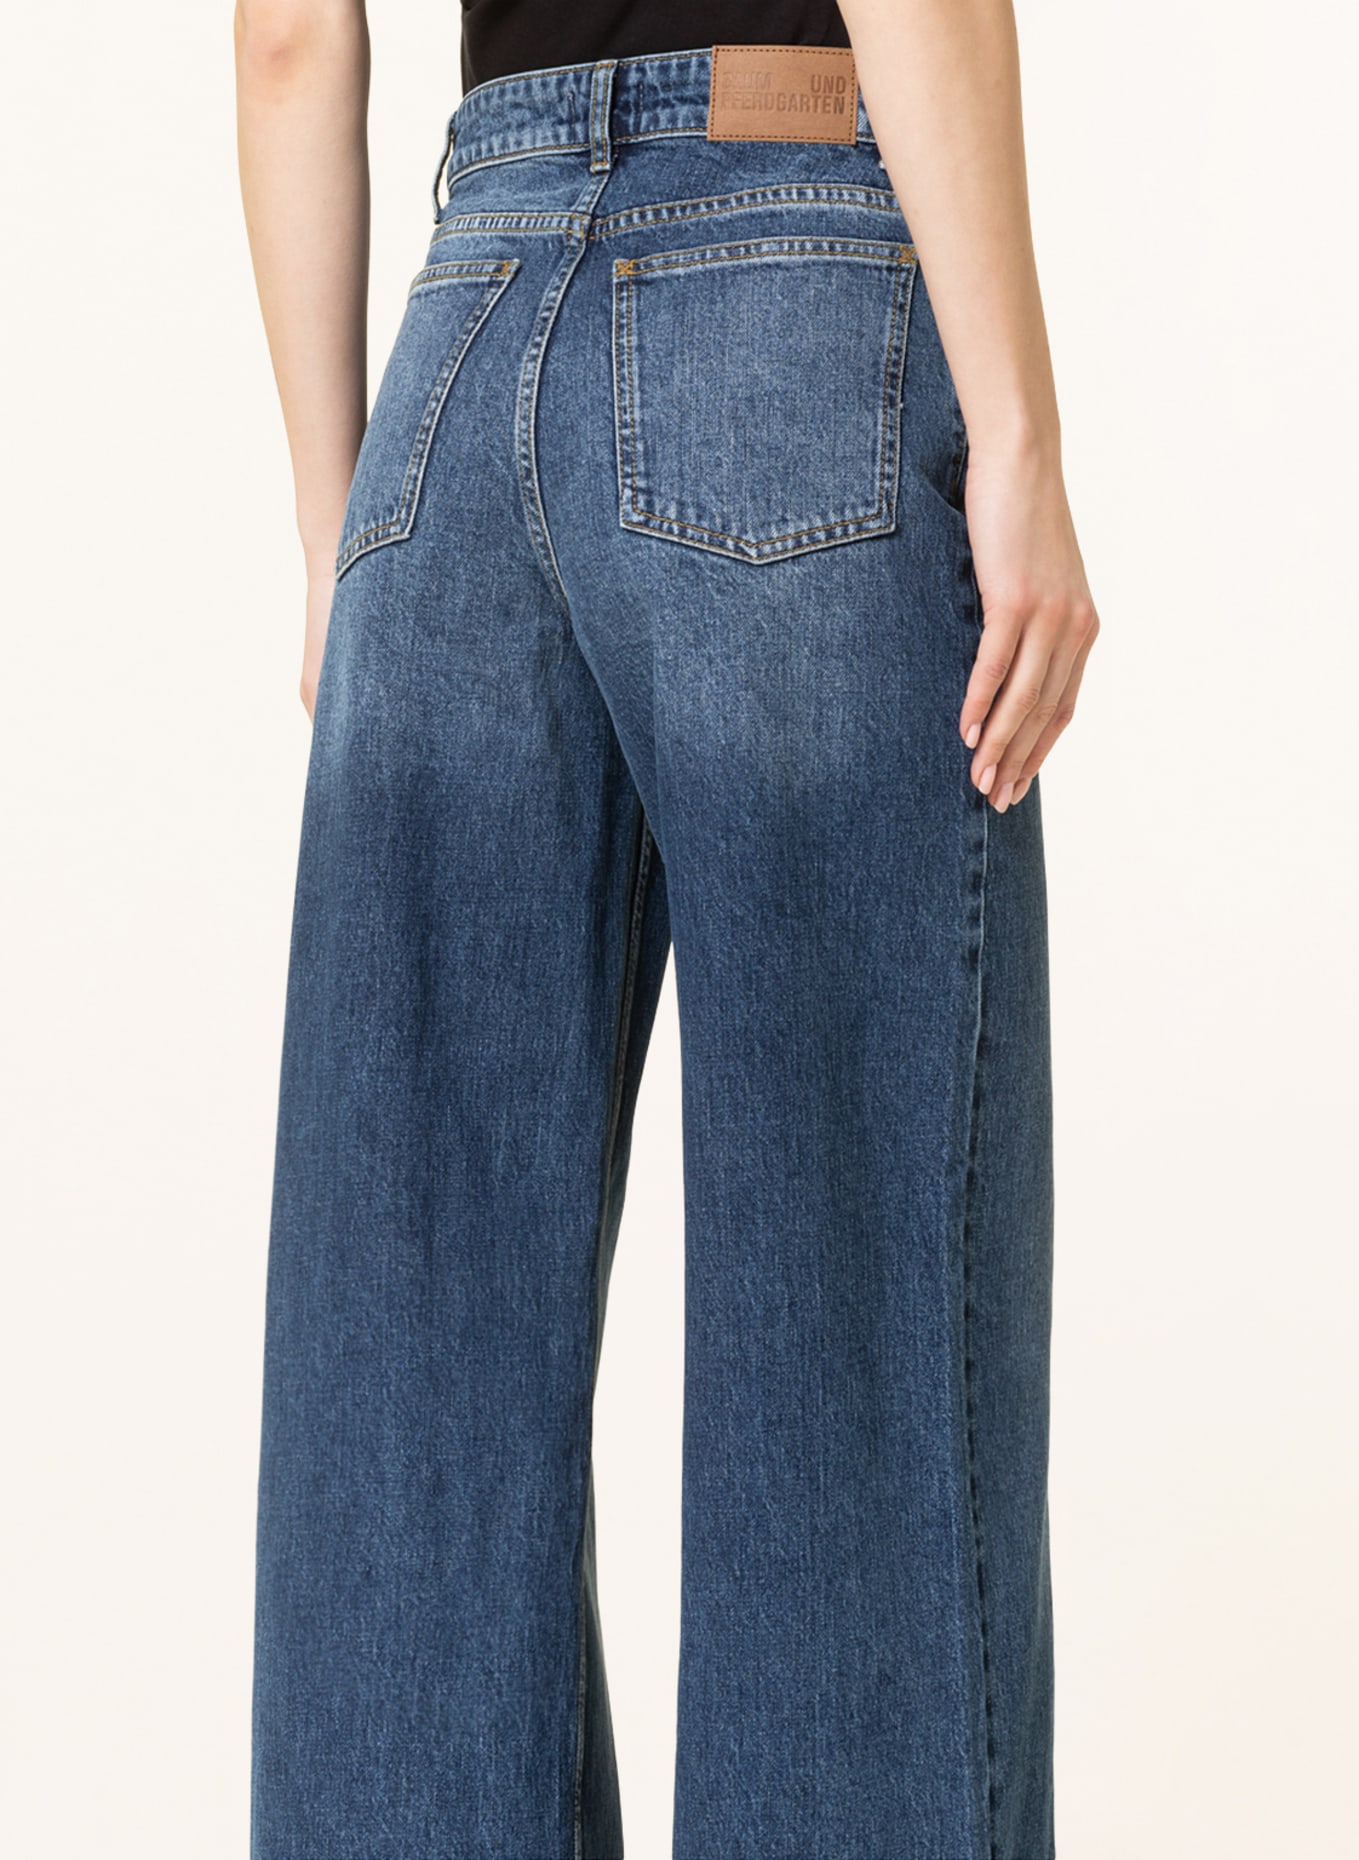 BAUM UND PFERDGARTEN Jeans NINI, Color: C6227 Washed Darkblue Denim (Image 5)